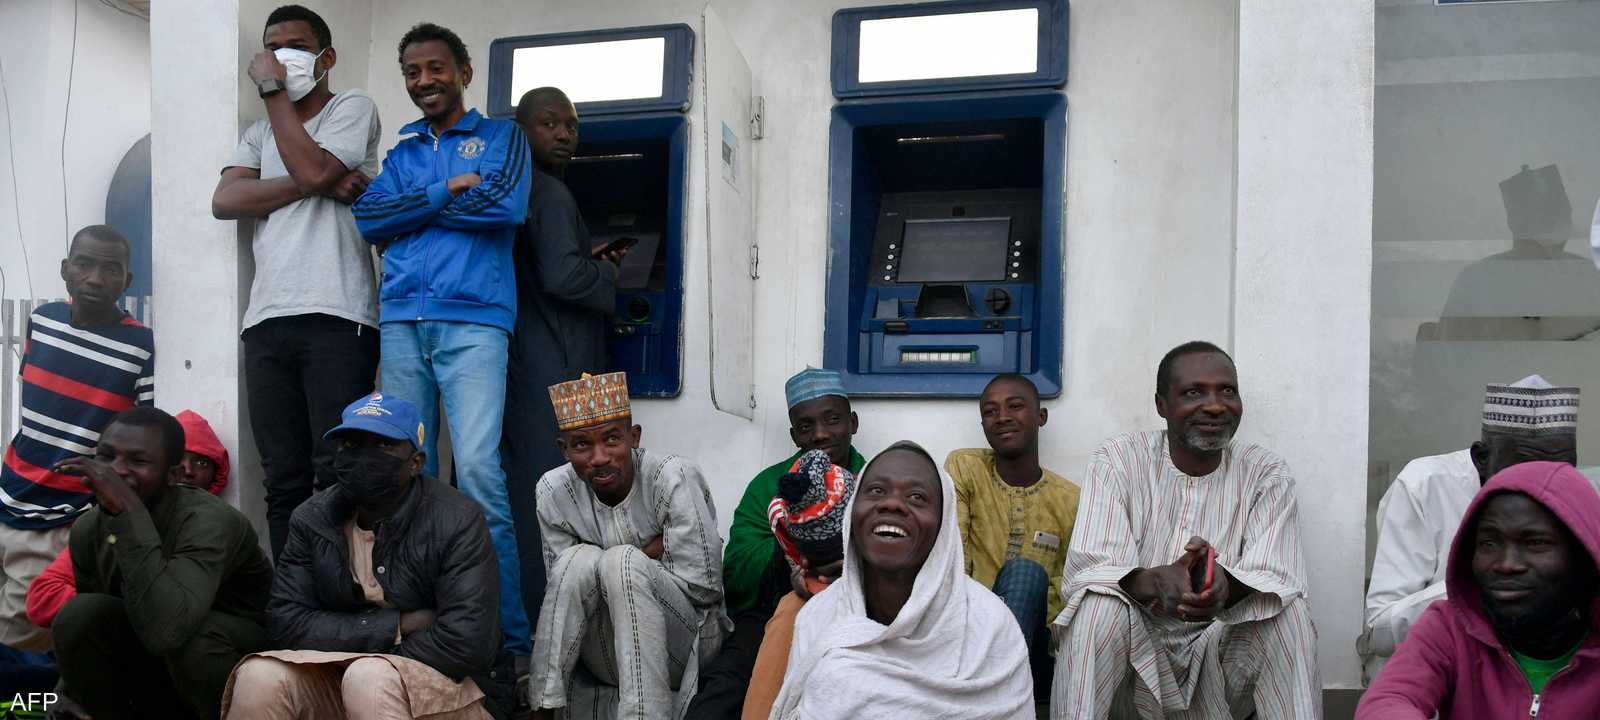 المتعاملون يصطفون أمام مكينات الصرف في نيجيريا